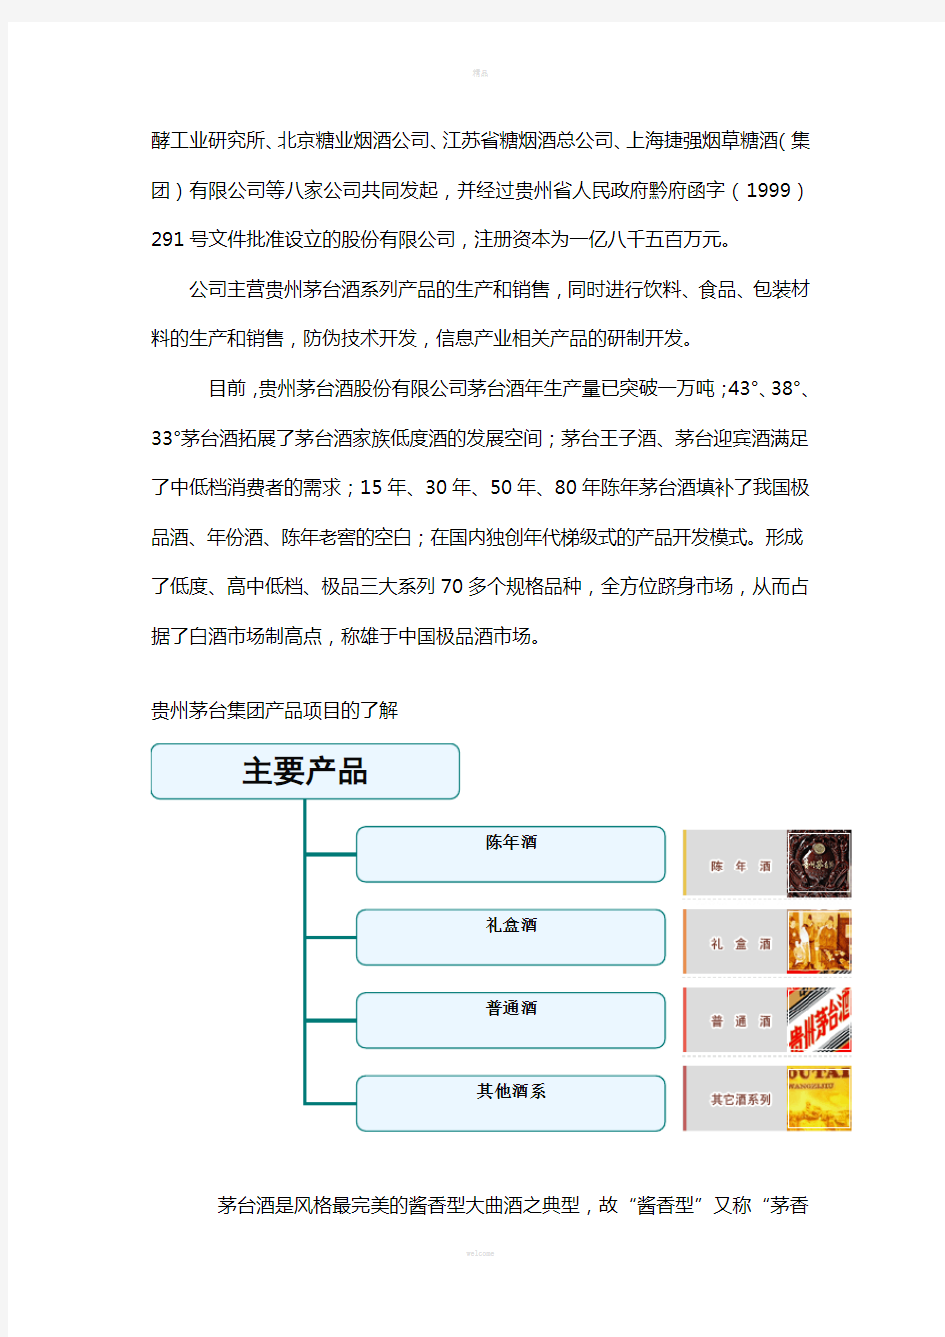 贵州茅台酒包装设计市场调研报告---视觉09221张宗奇(1)